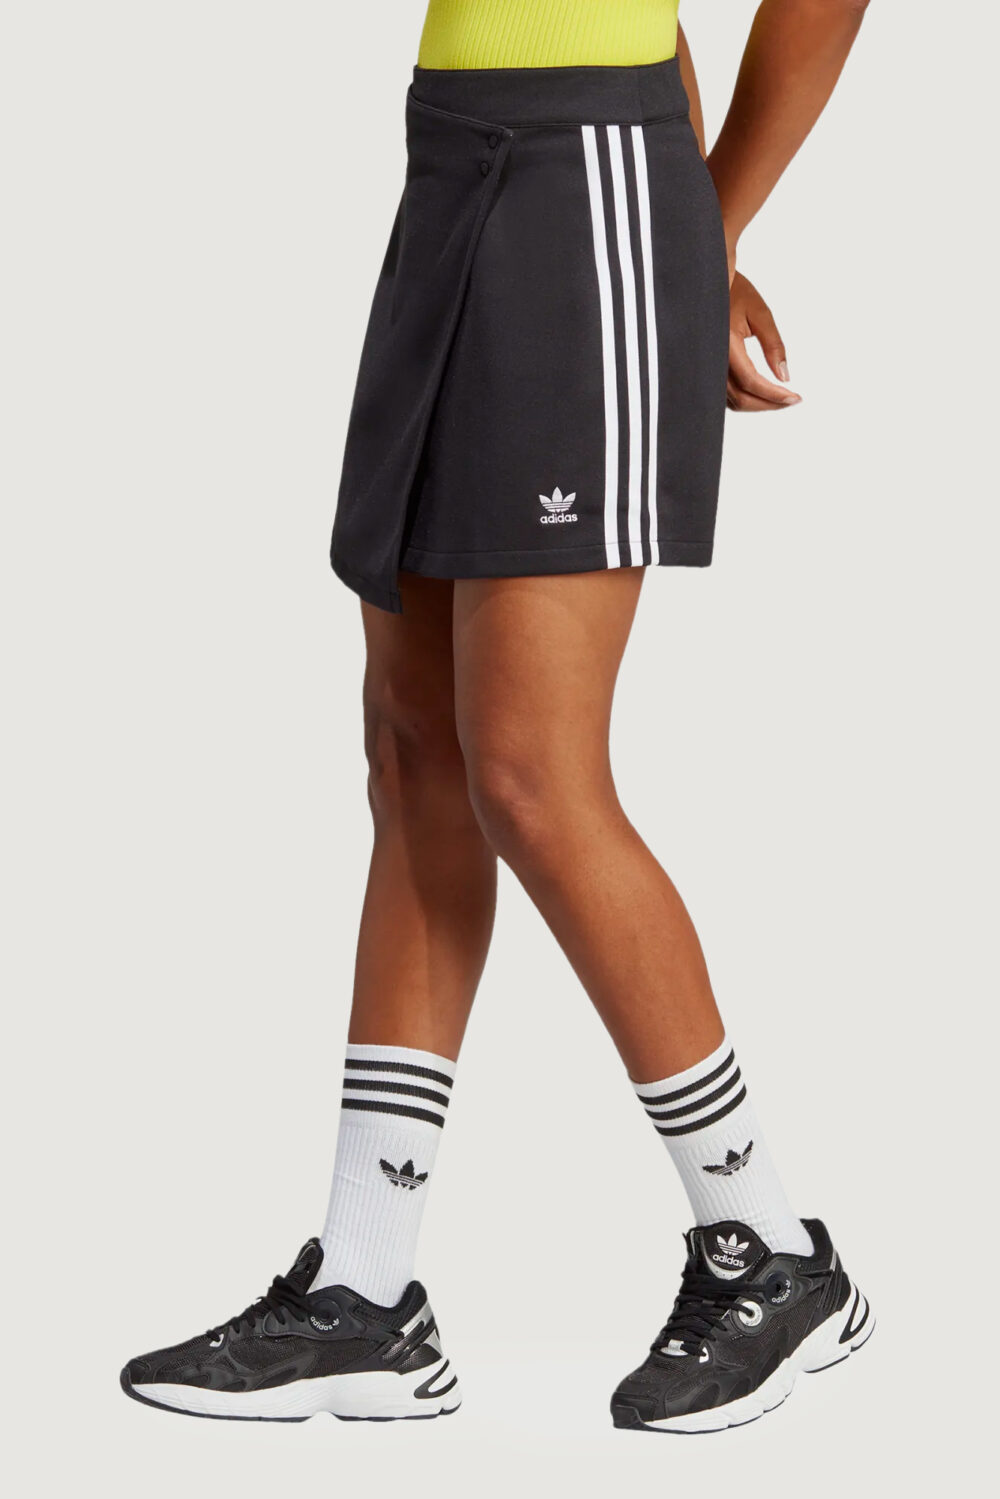 Minigonna Adidas wrapping skirt Nero - Foto 1